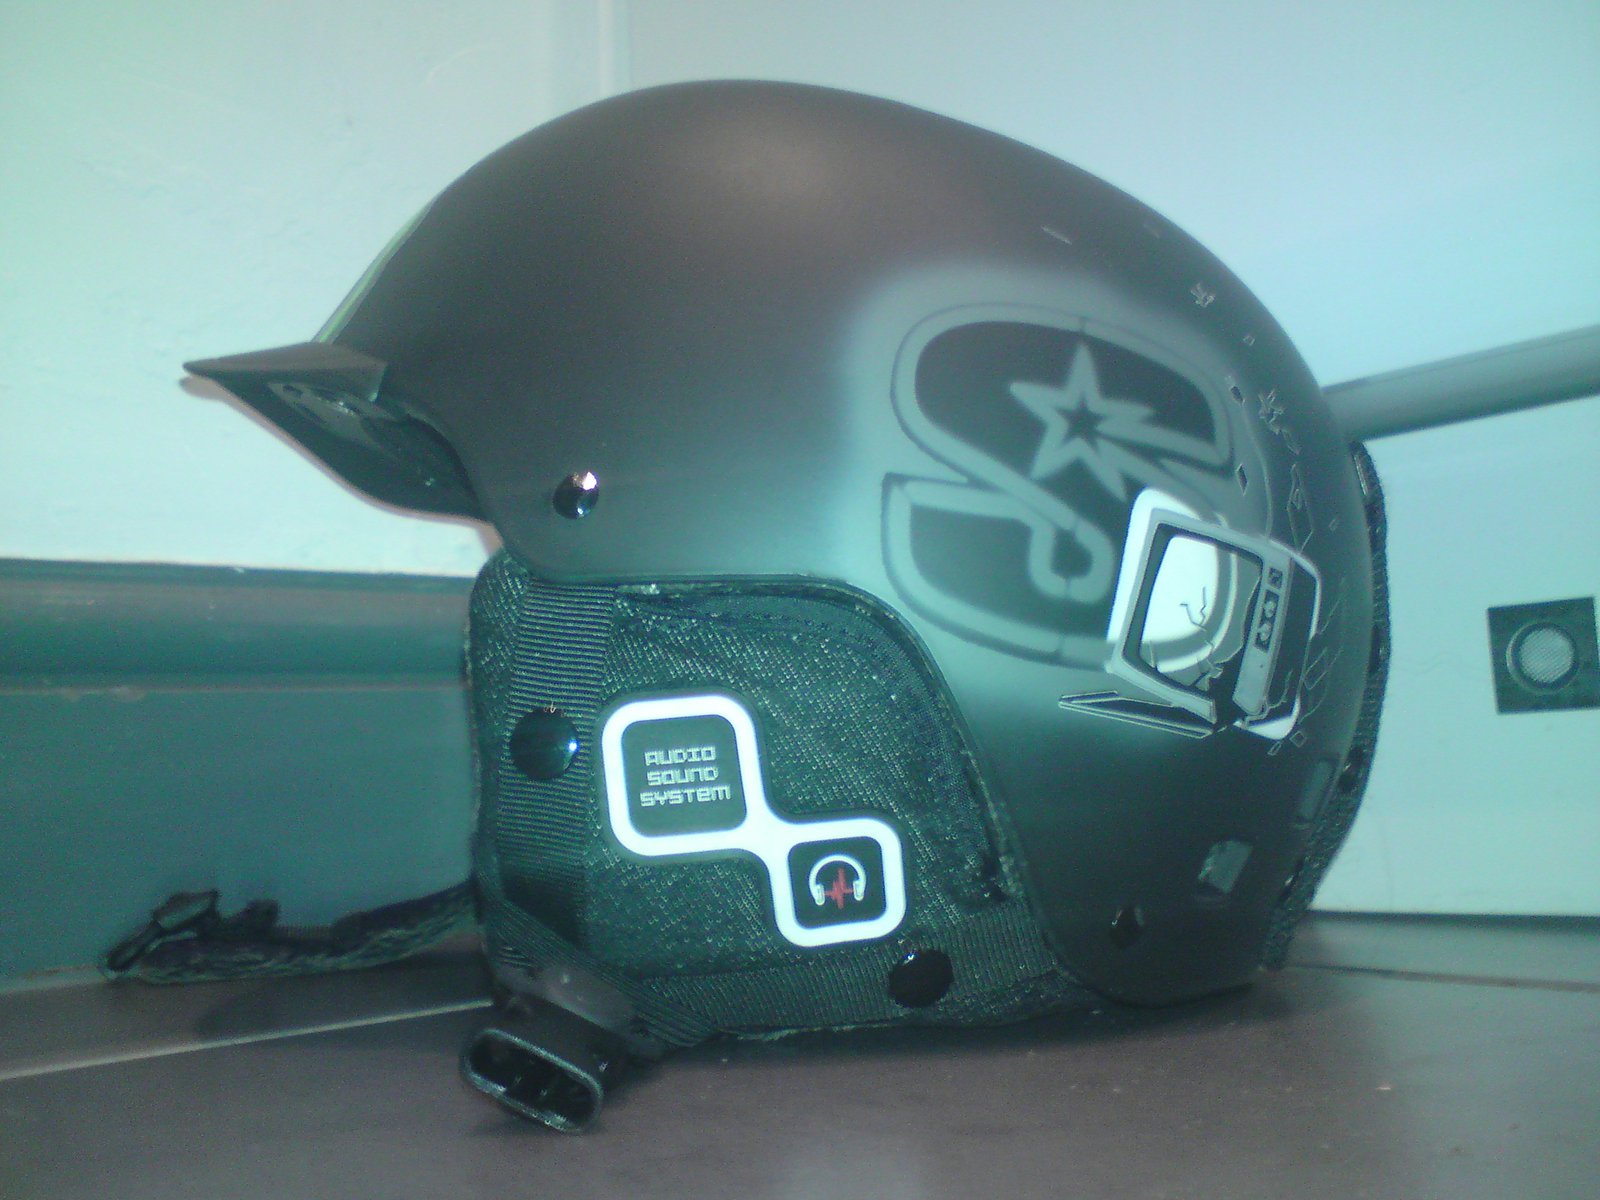 My new salomon brigade audio helmet